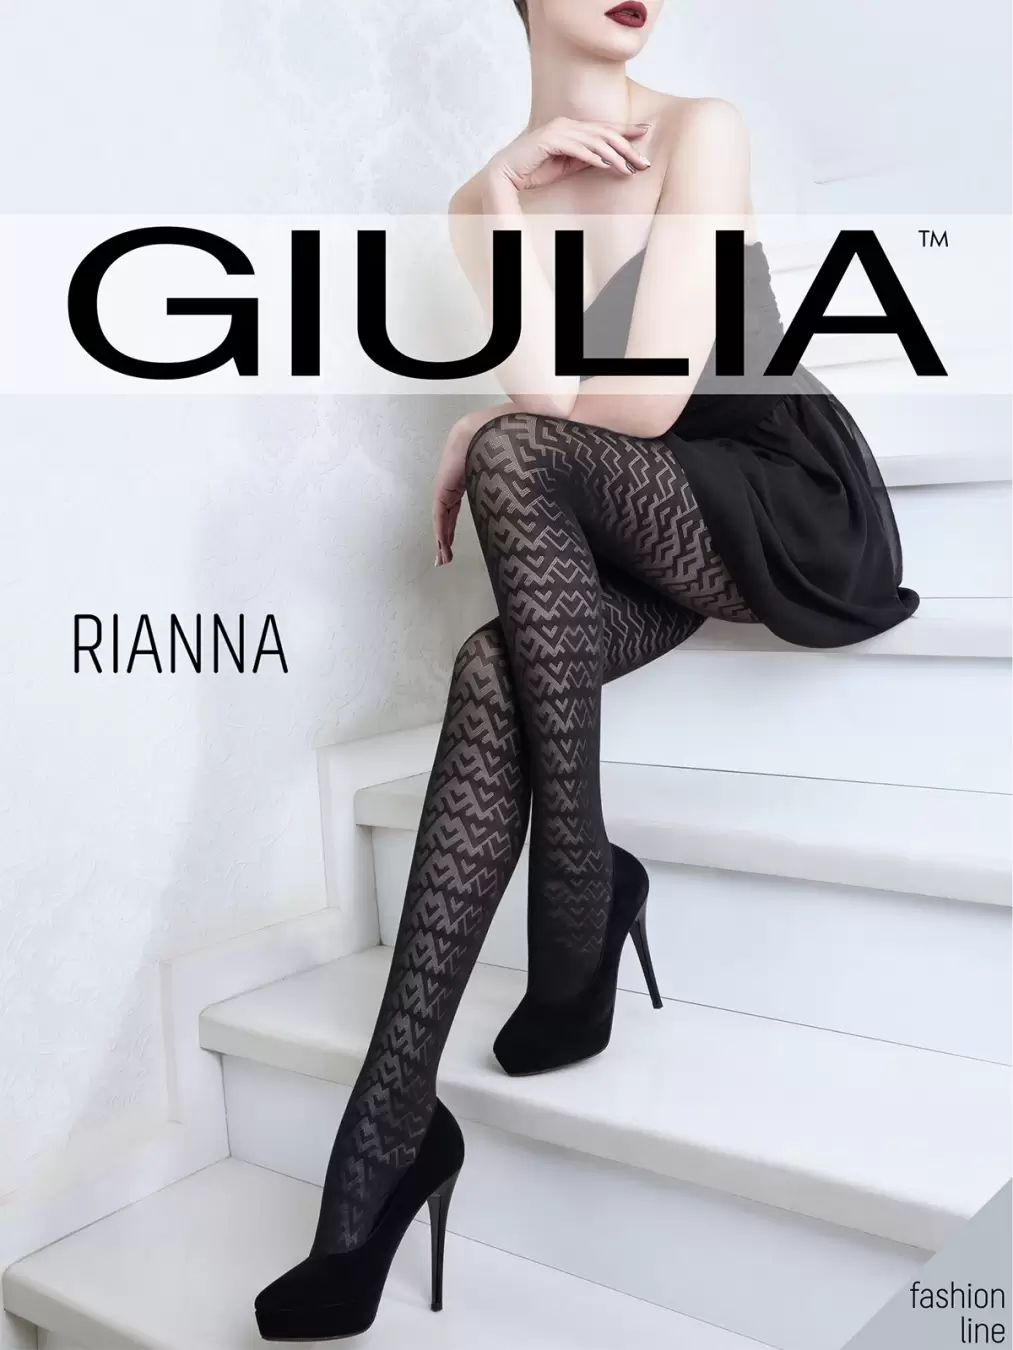 Giulia RIANNA 04, фантазийные колготки (изображение 1)